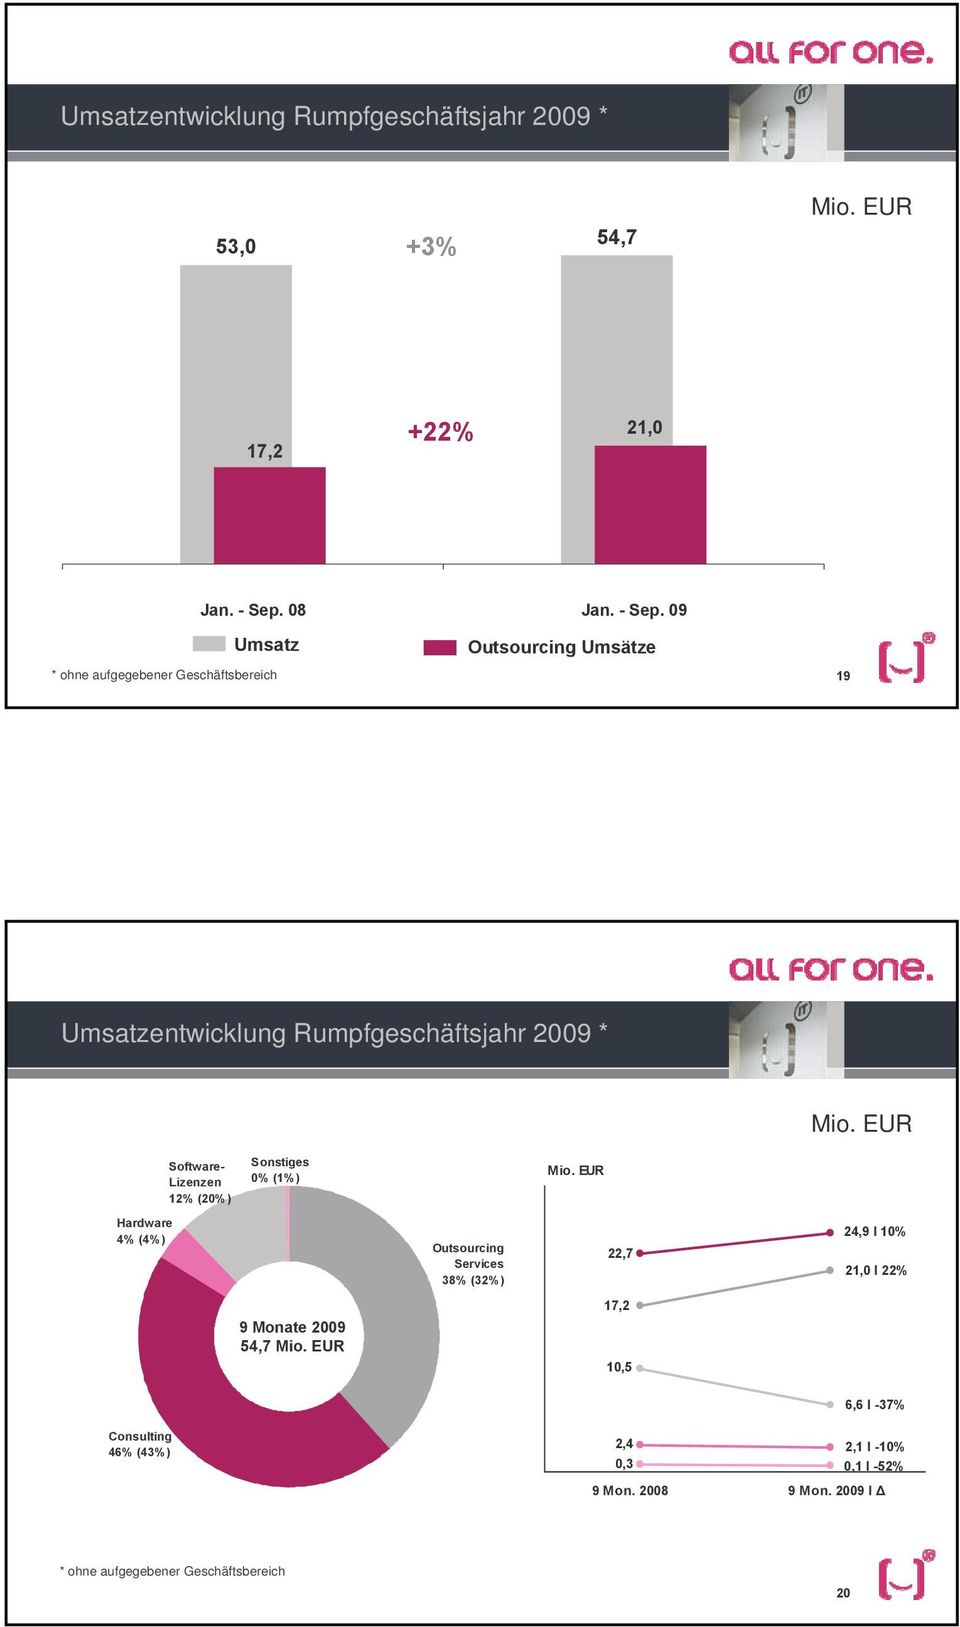 EUR Software- Lizenzen 12% (20%) Sonstiges 0% (1%) Mio.